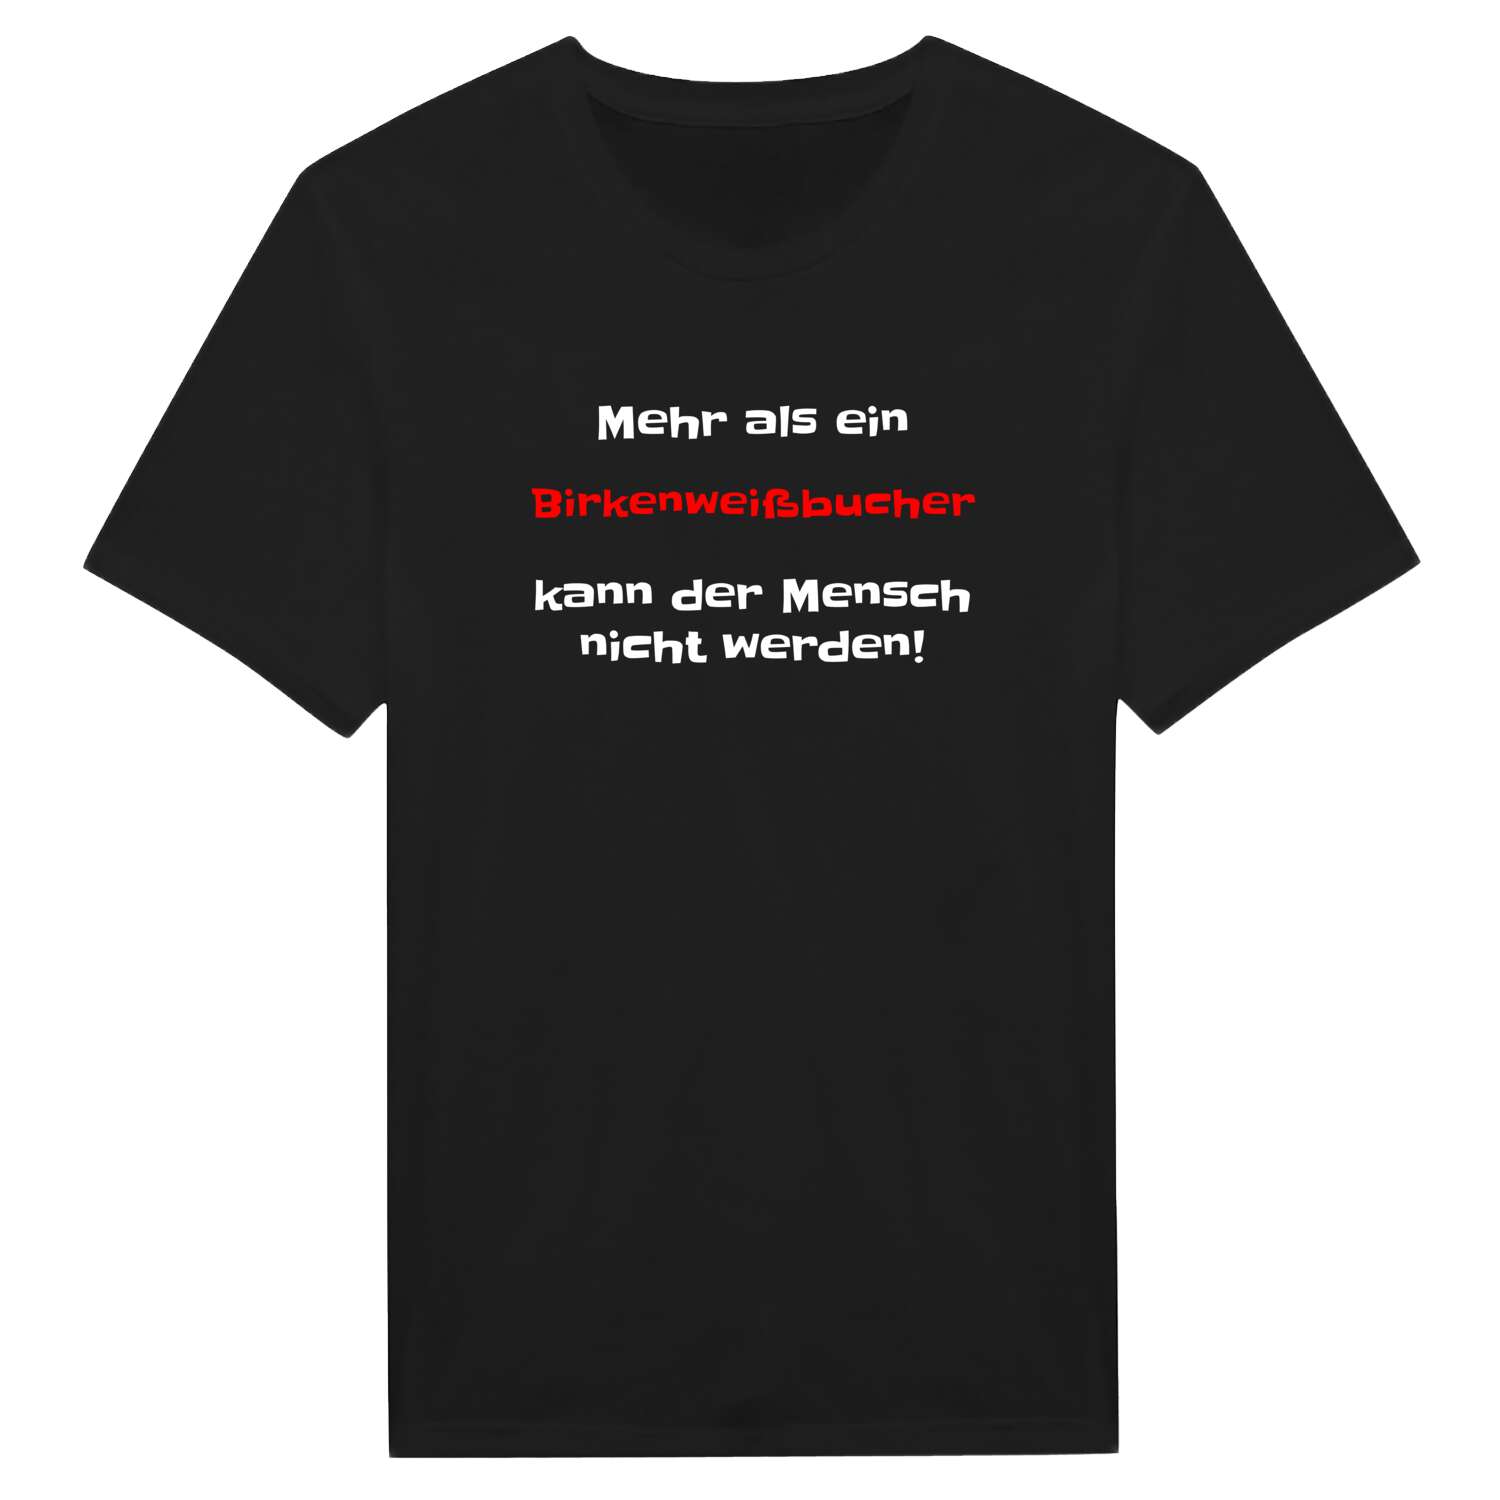 Birkenweißbuch T-Shirt »Mehr als ein«